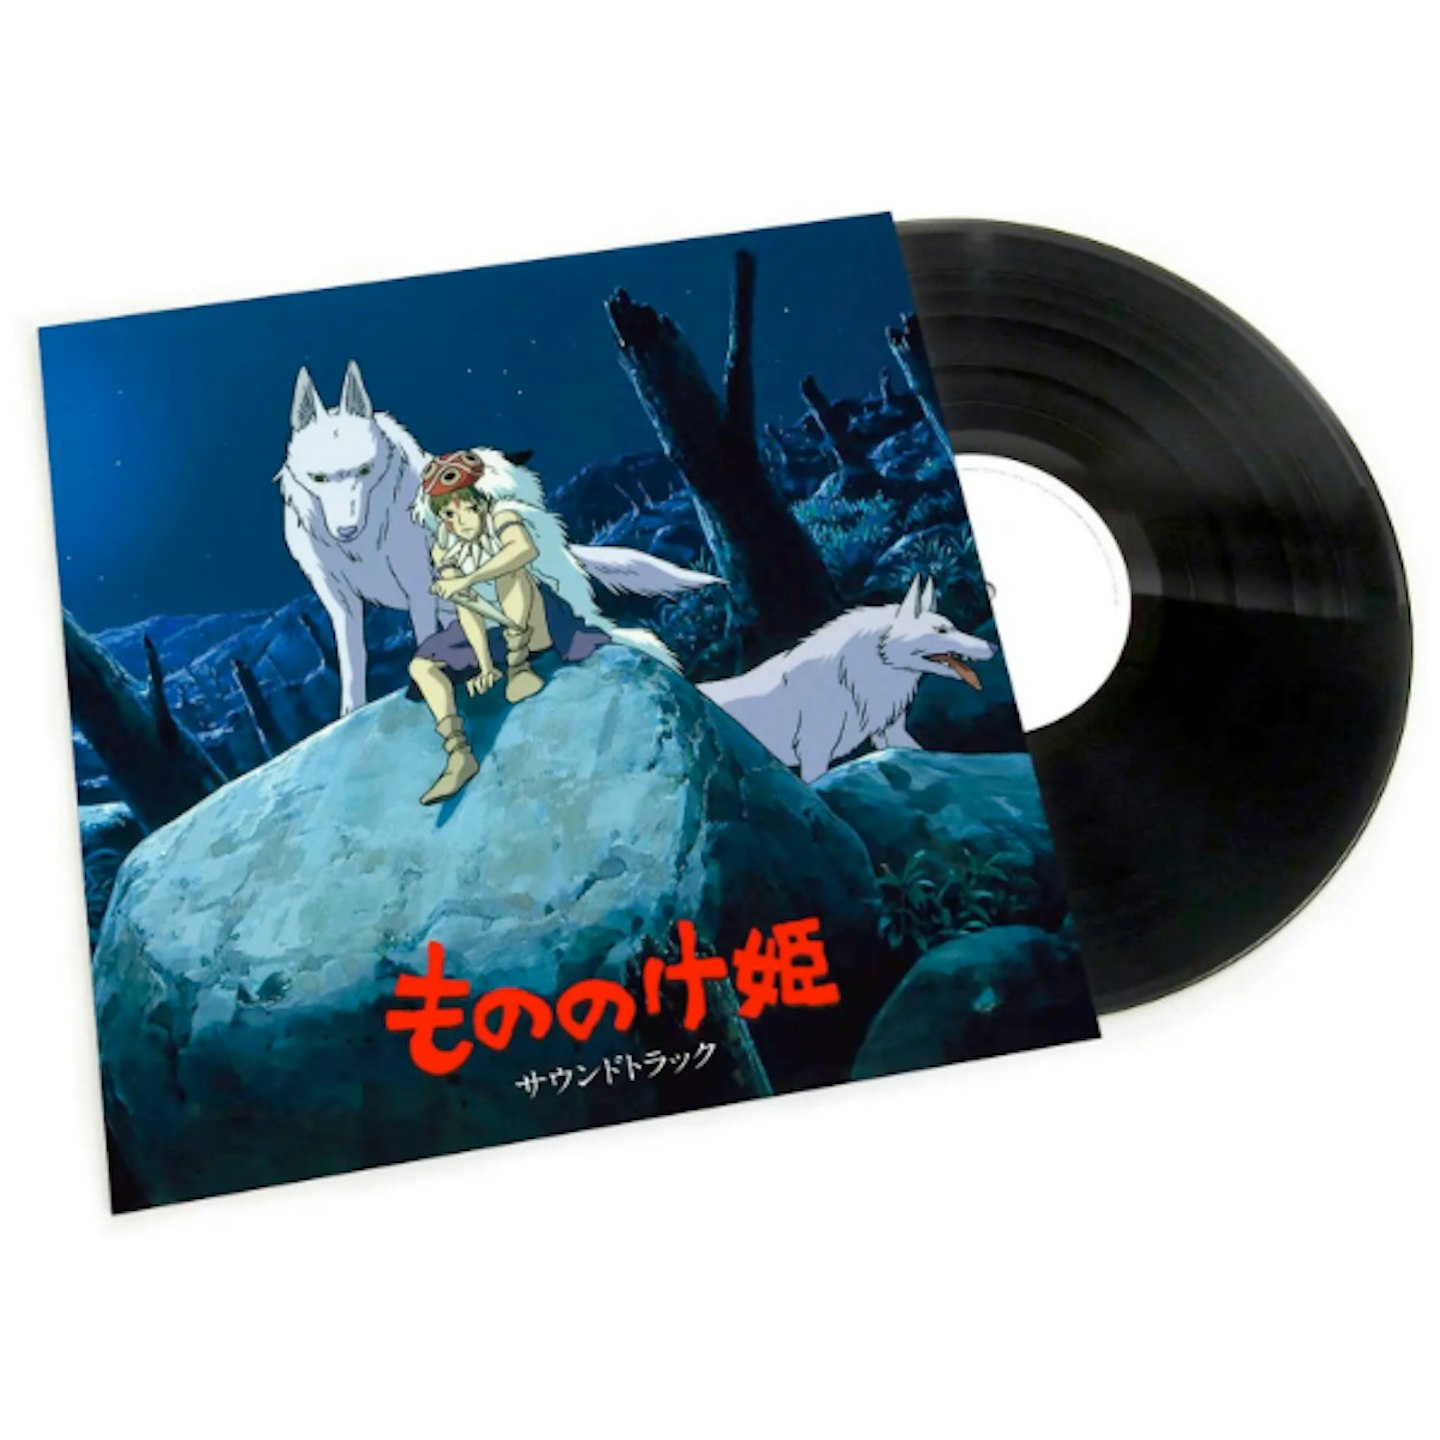 Studio Ghibli's Princess Mononoke Soundtrack Vinyl 2LP